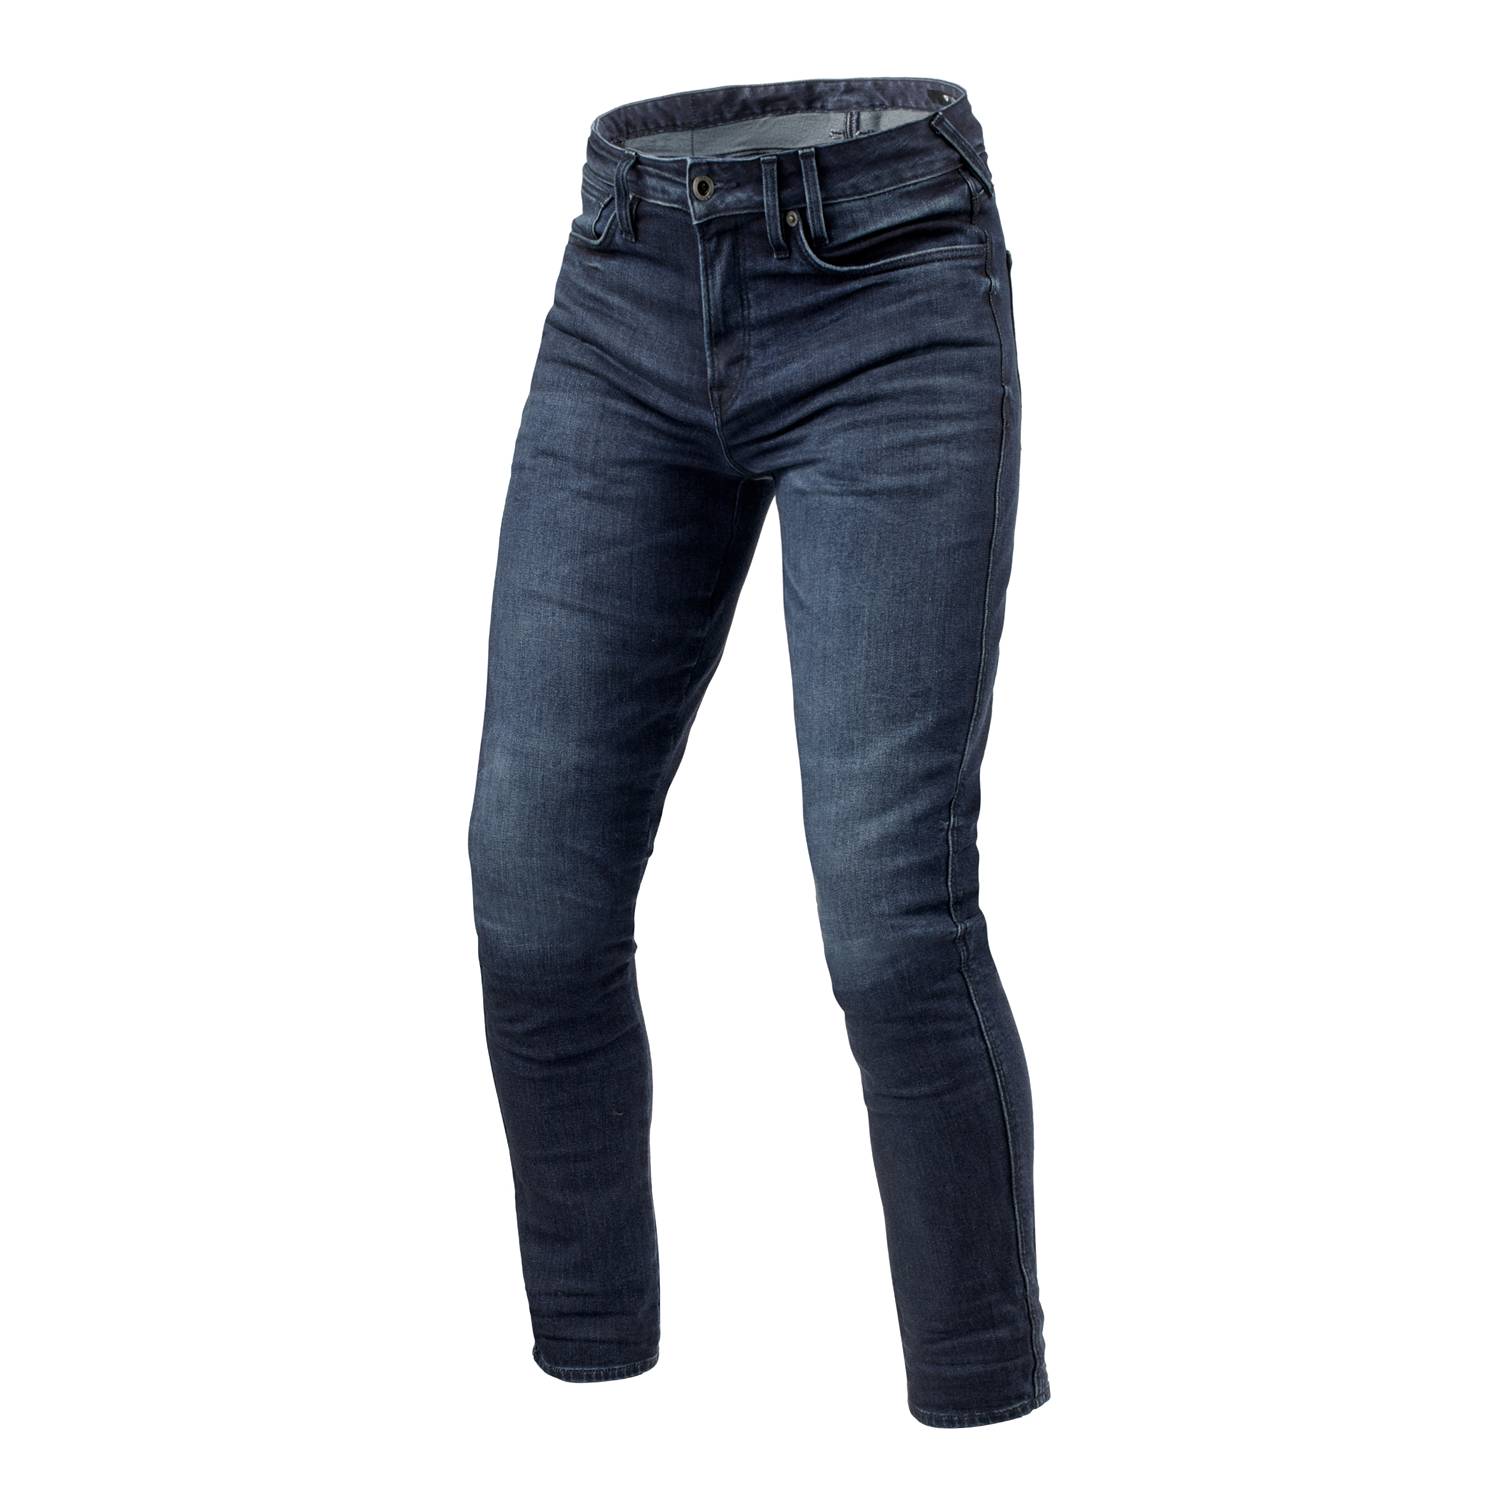 Image of REV'IT! Jeans Carlin SK Dark Blue Used L32 Motorcycle Jeans Size L32/W28 EN